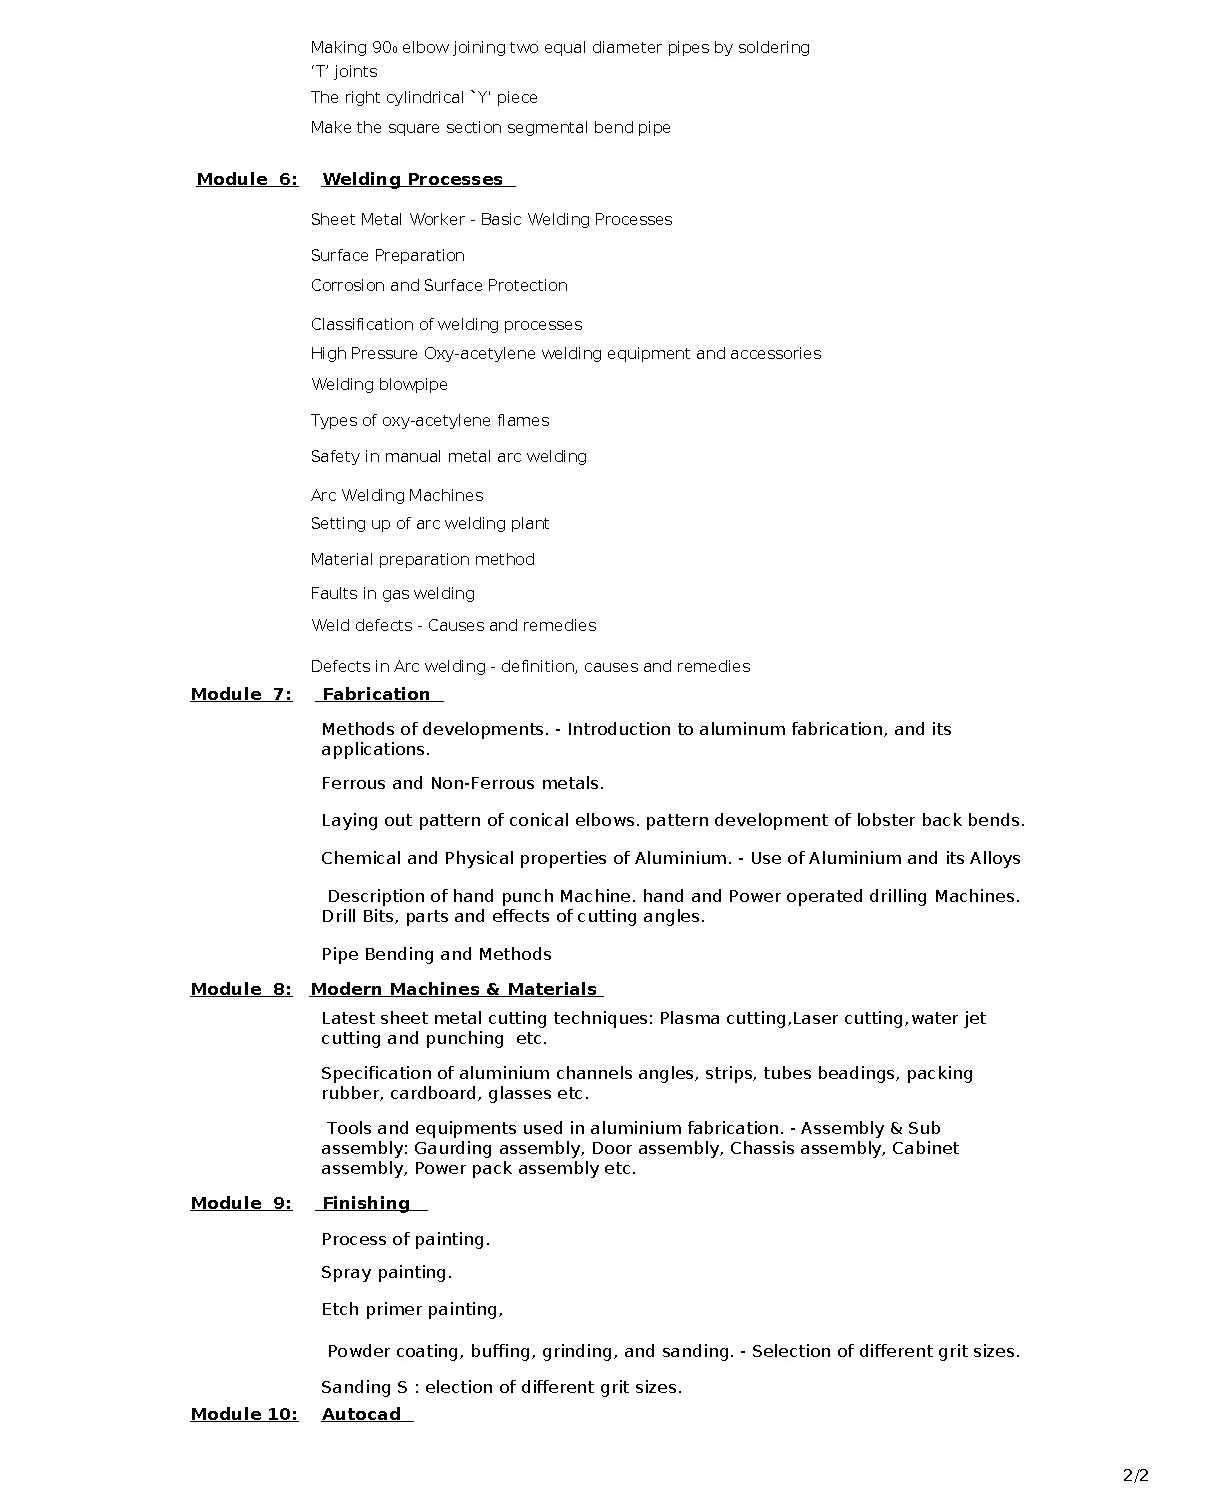 KPSC Junior Instructor Sheet Metal Worker Exam Syllabus - Notification Image 2